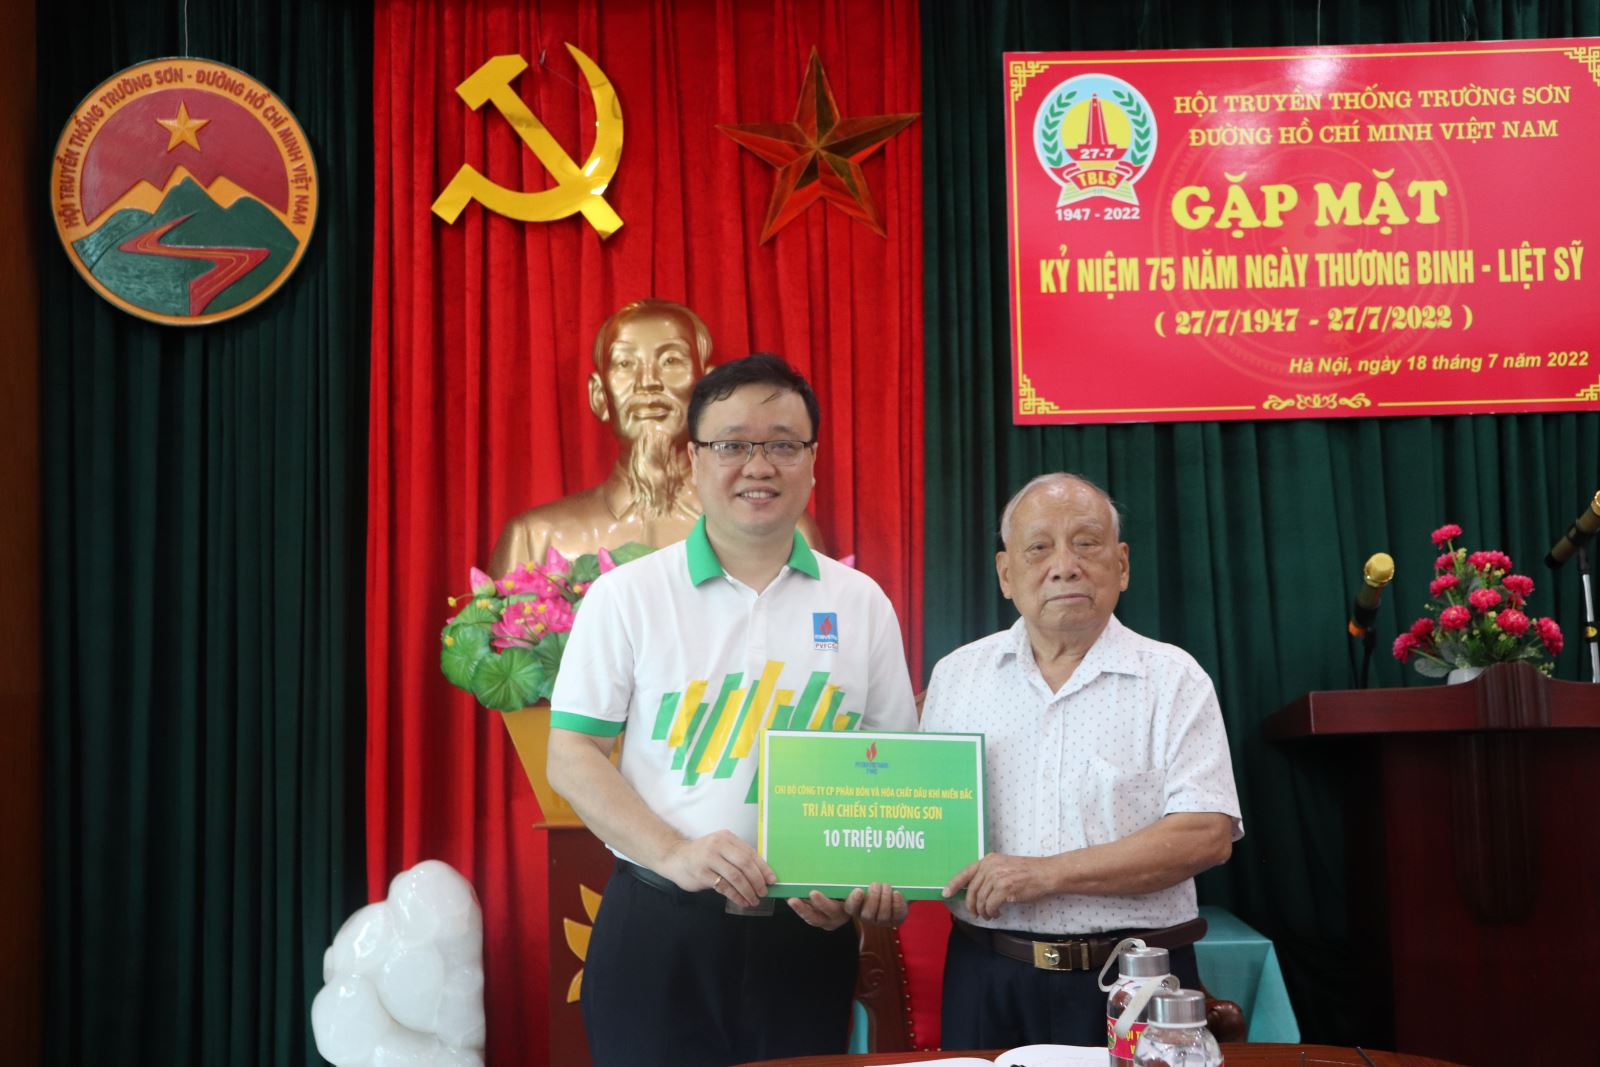 Chi bộ PMB cùng các tổ chức đoàn thể đến thăm hỏi và trao quà tri ân đến Hội truyền thống Trường Sơn - Đường Hồ Chí Minh Việt Nam nhân kỷ niệm 75 năm ngày Thương binh - Liệt sỹ (27/7/1947 - 27/7/2022)